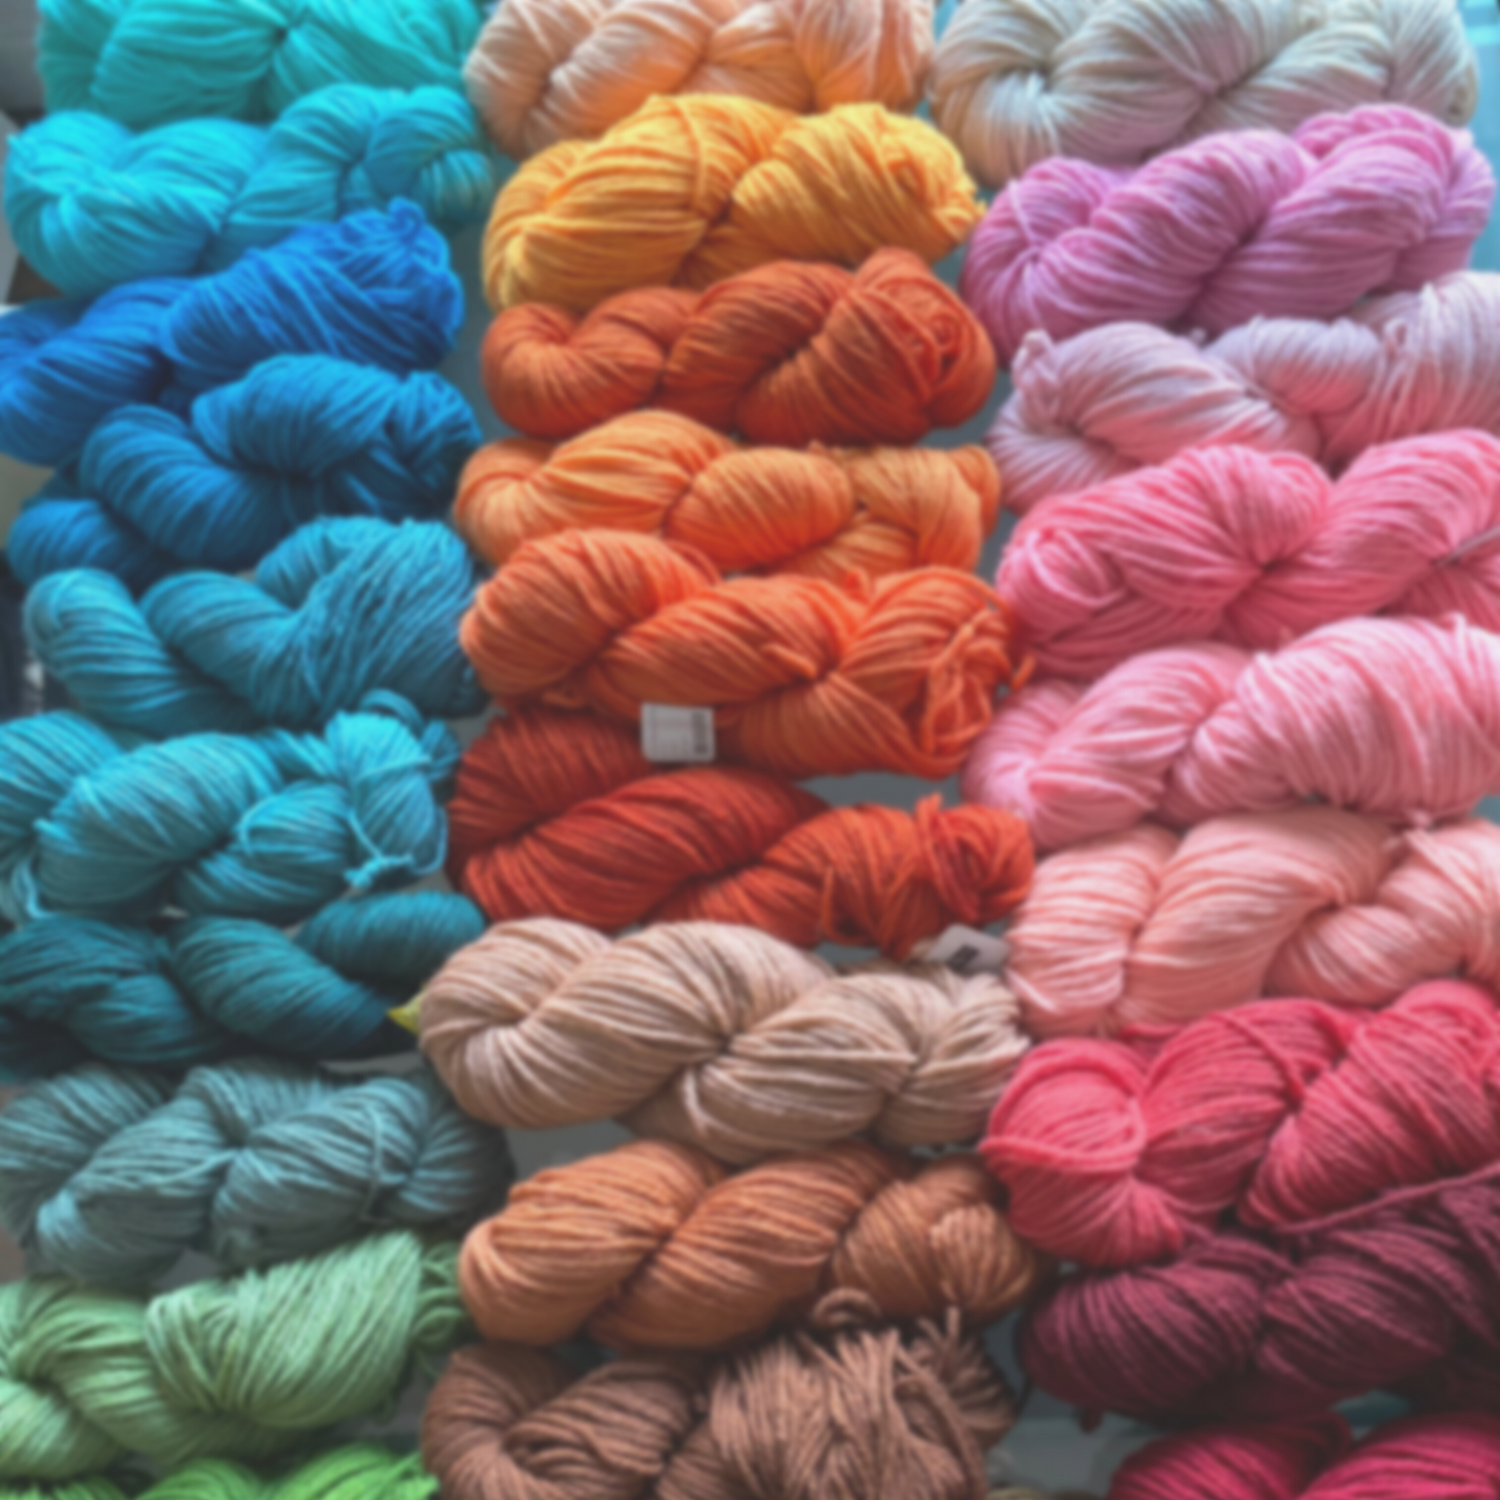 Crochet Tunecino – Tienda TREN